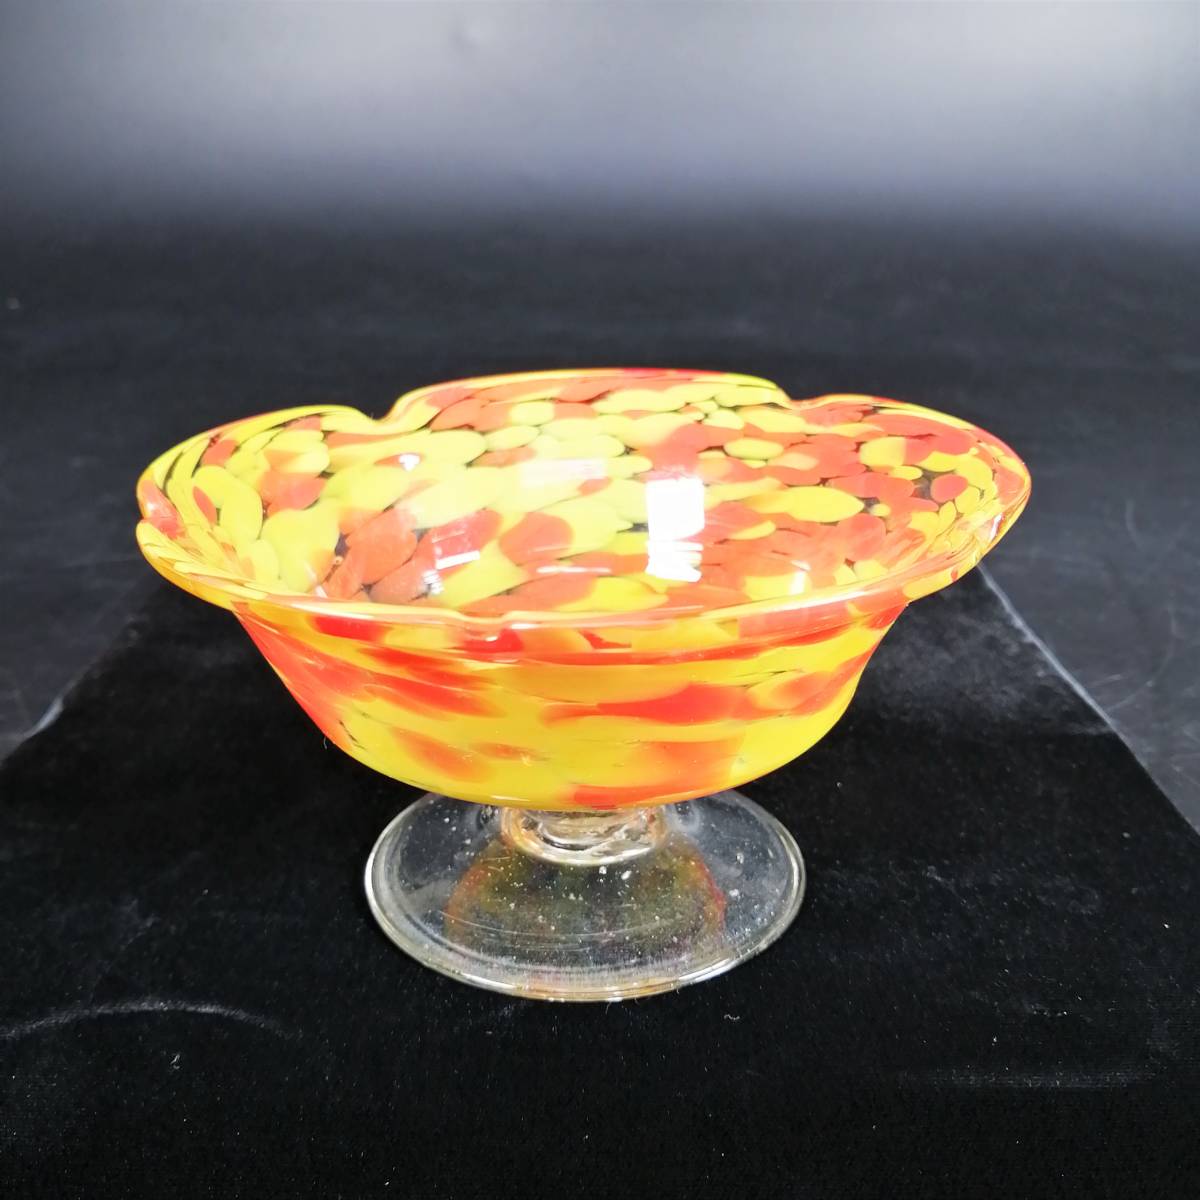 明治 大正 ガラス 氷コップ かき氷カップ 皿 器 二色 マーブル 模様 花形 花型 黄色 オレンジ 二色斑 アンティーク コレクション _画像2